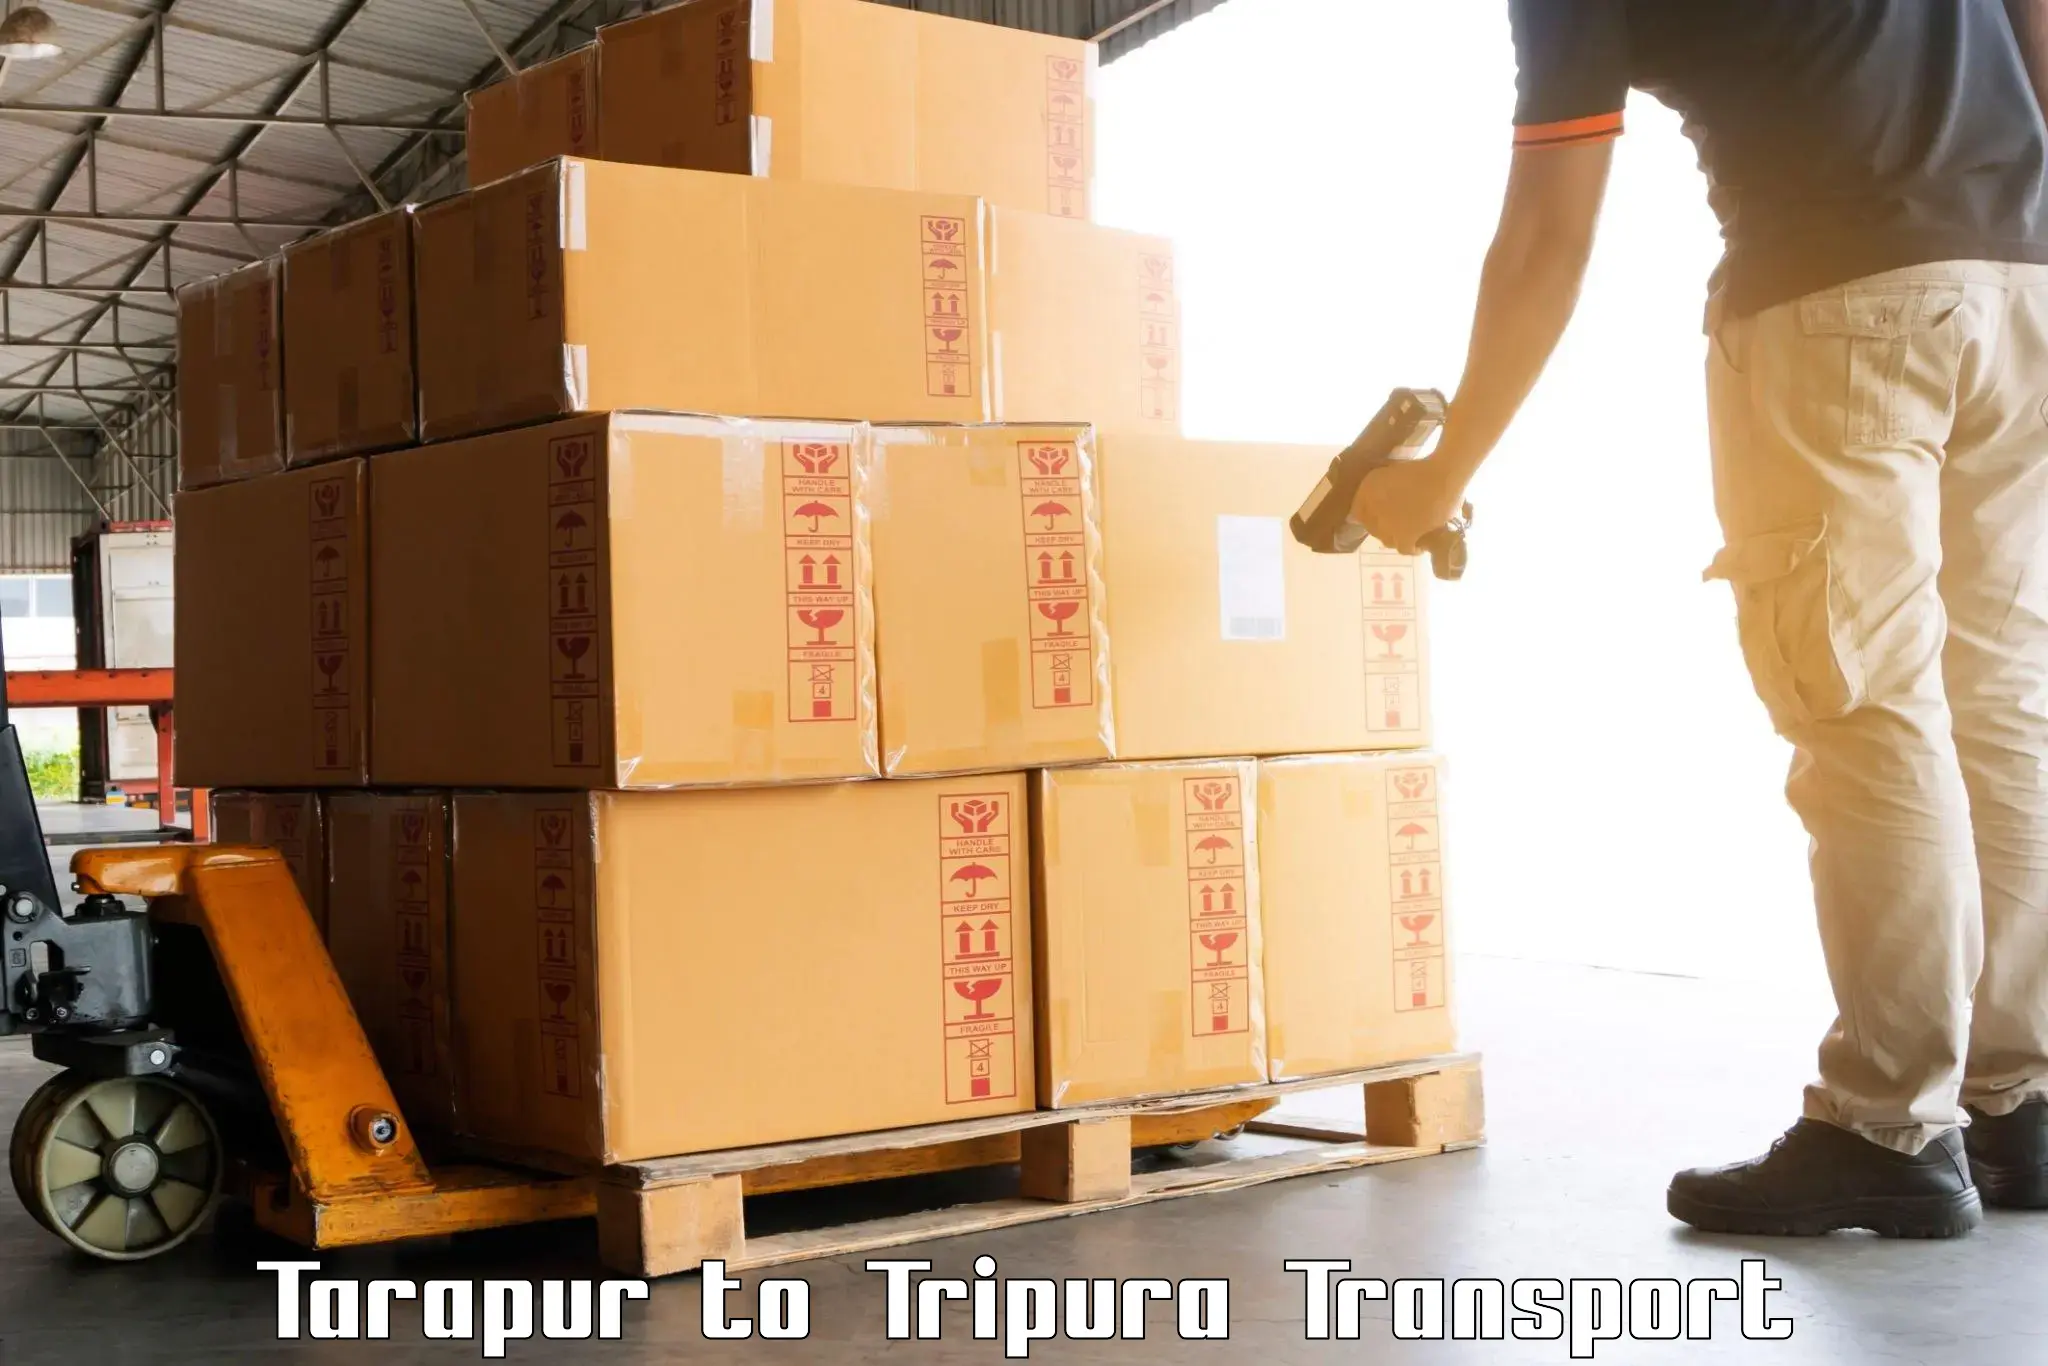 India truck logistics services Tarapur to Tripura